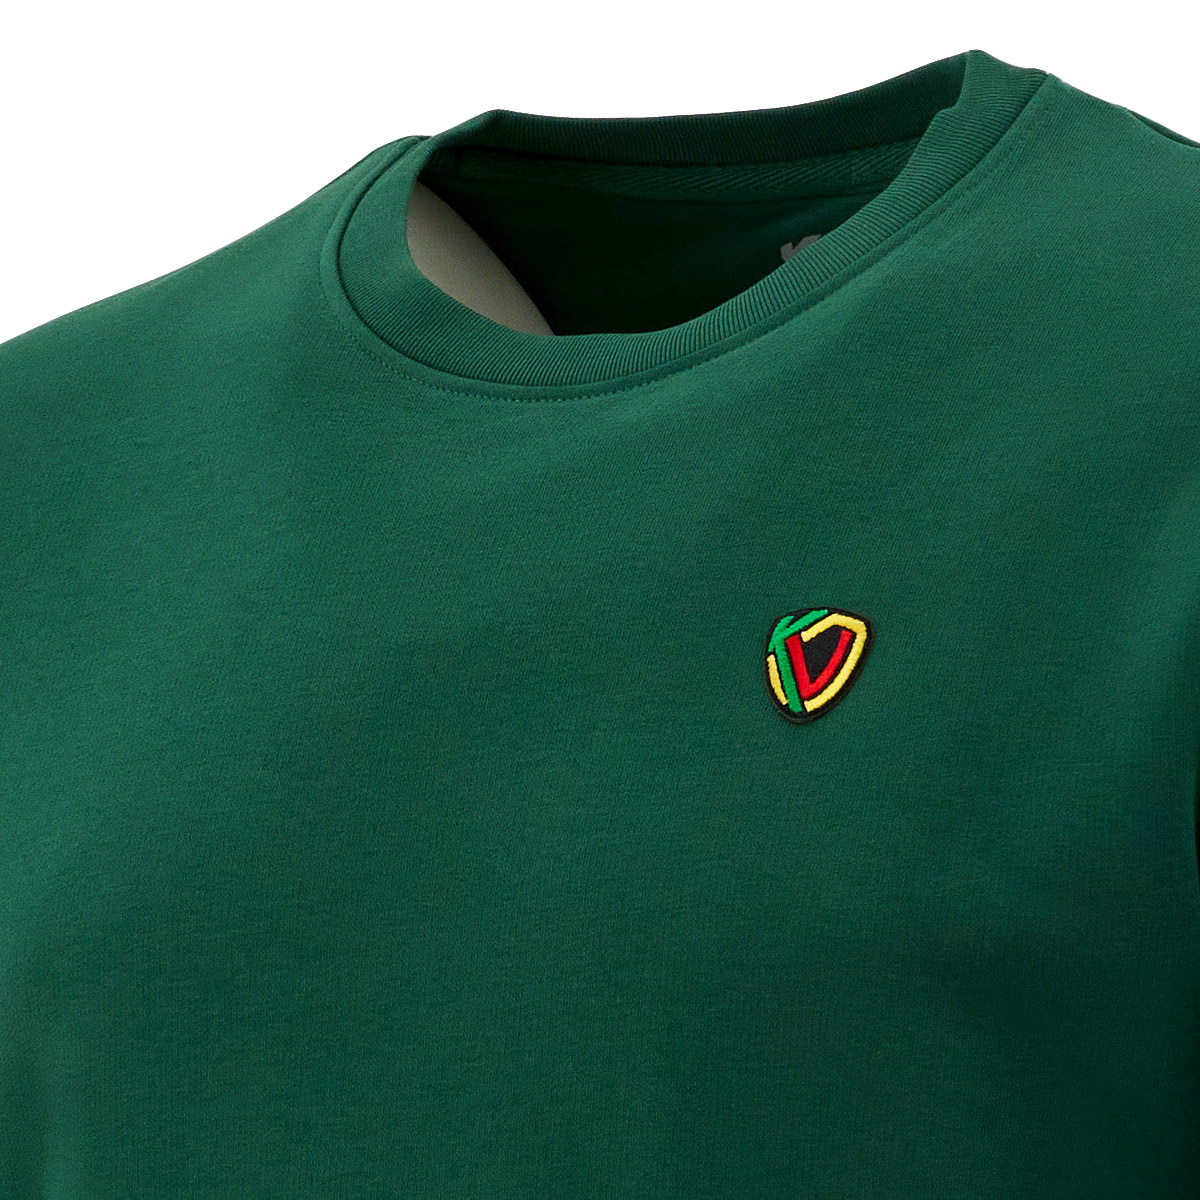 Pull vert avec logo brodé - KVO 